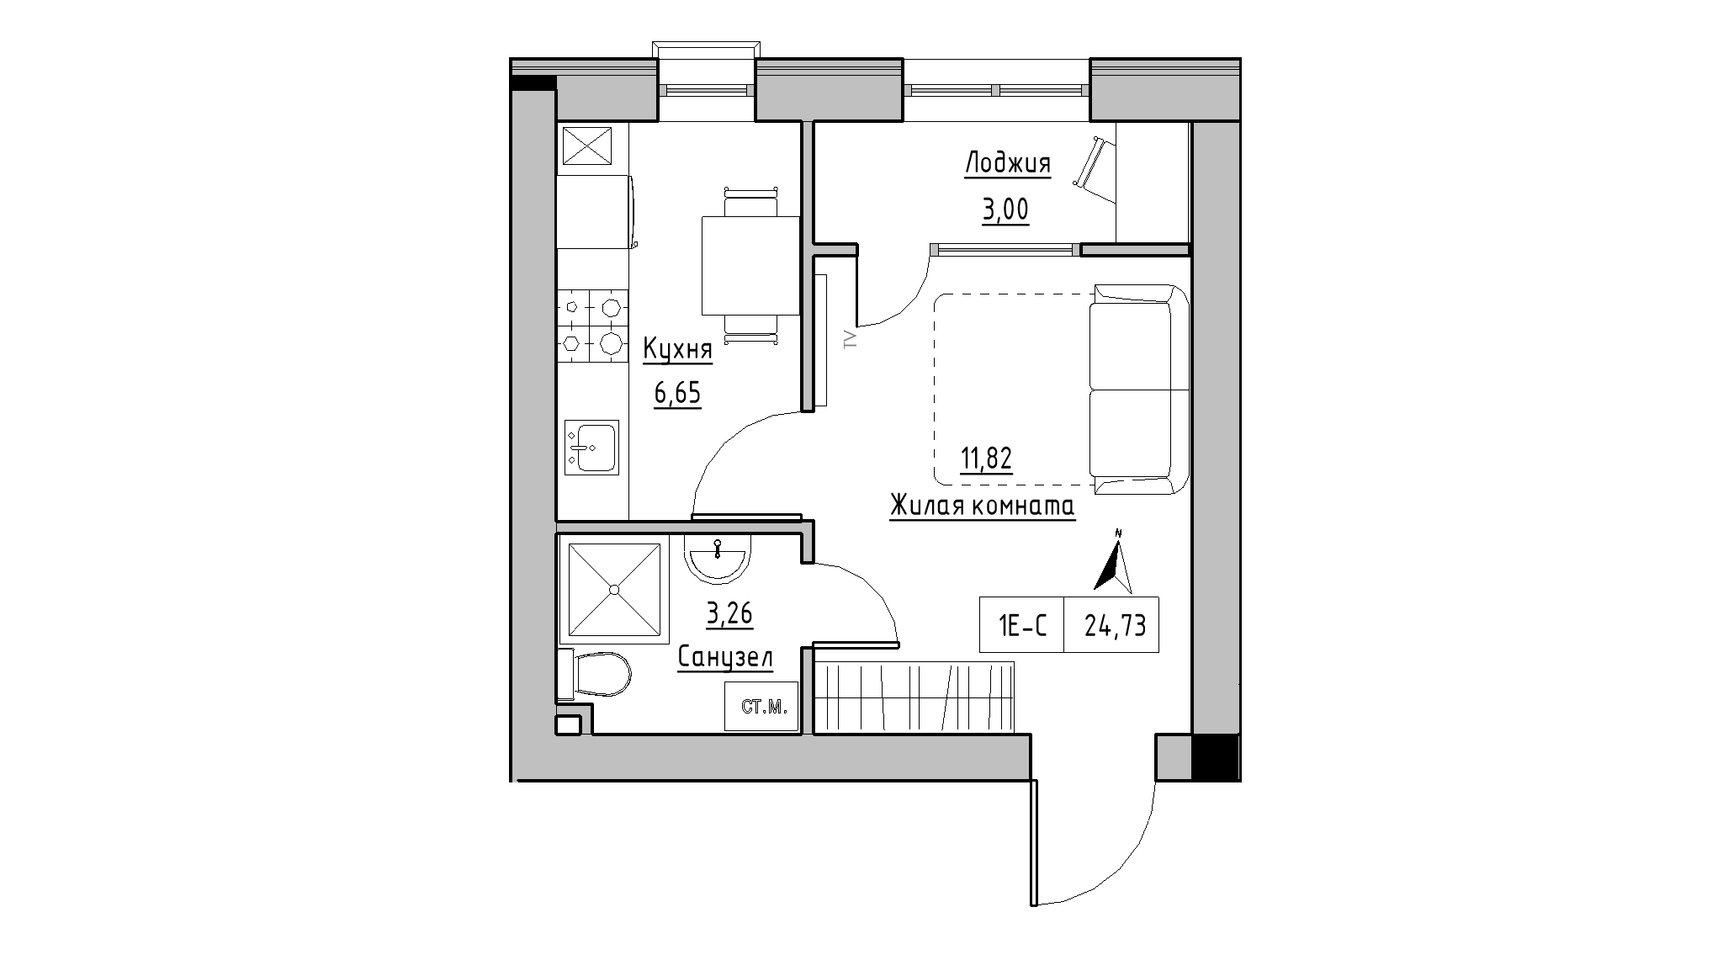 Планування 1-к квартира площею 24.73м2, KS-010-01/0004.